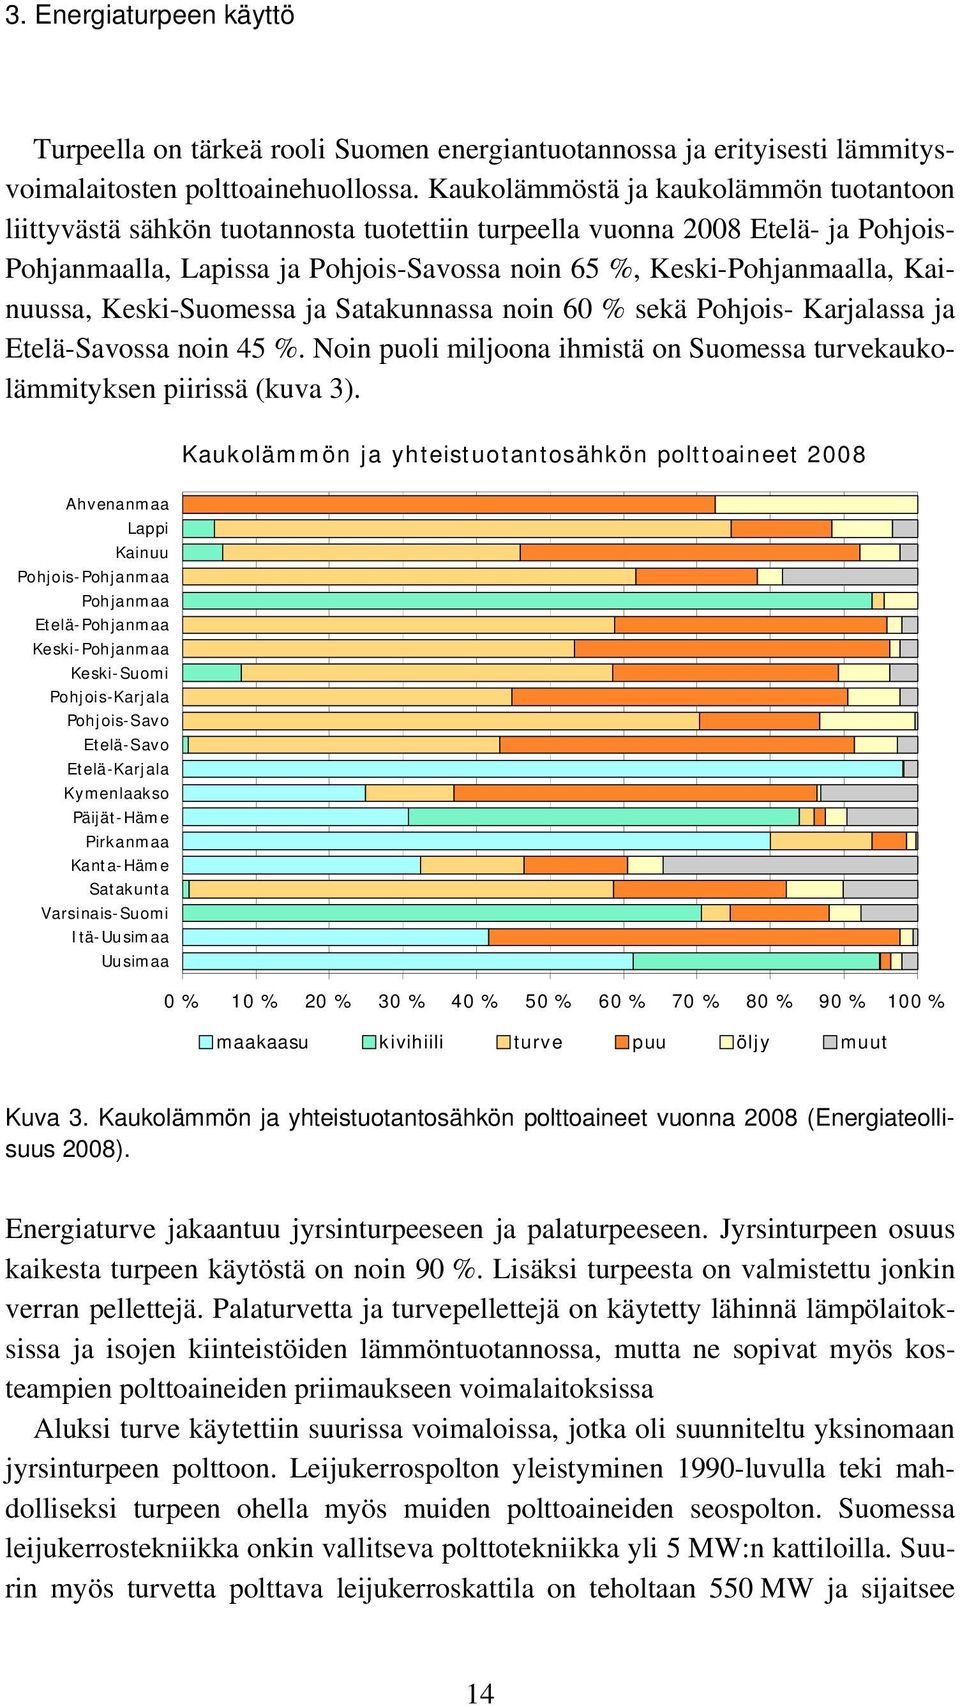 Kainuussa, Keski-Suomessa ja Satakunnassa noin 60 % sekä Pohjois- Karjalassa ja Etelä-Savossa noin 45 %. Noin puoli miljoona ihmistä on Suomessa turvekaukolämmityksen piirissä (kuva 3).